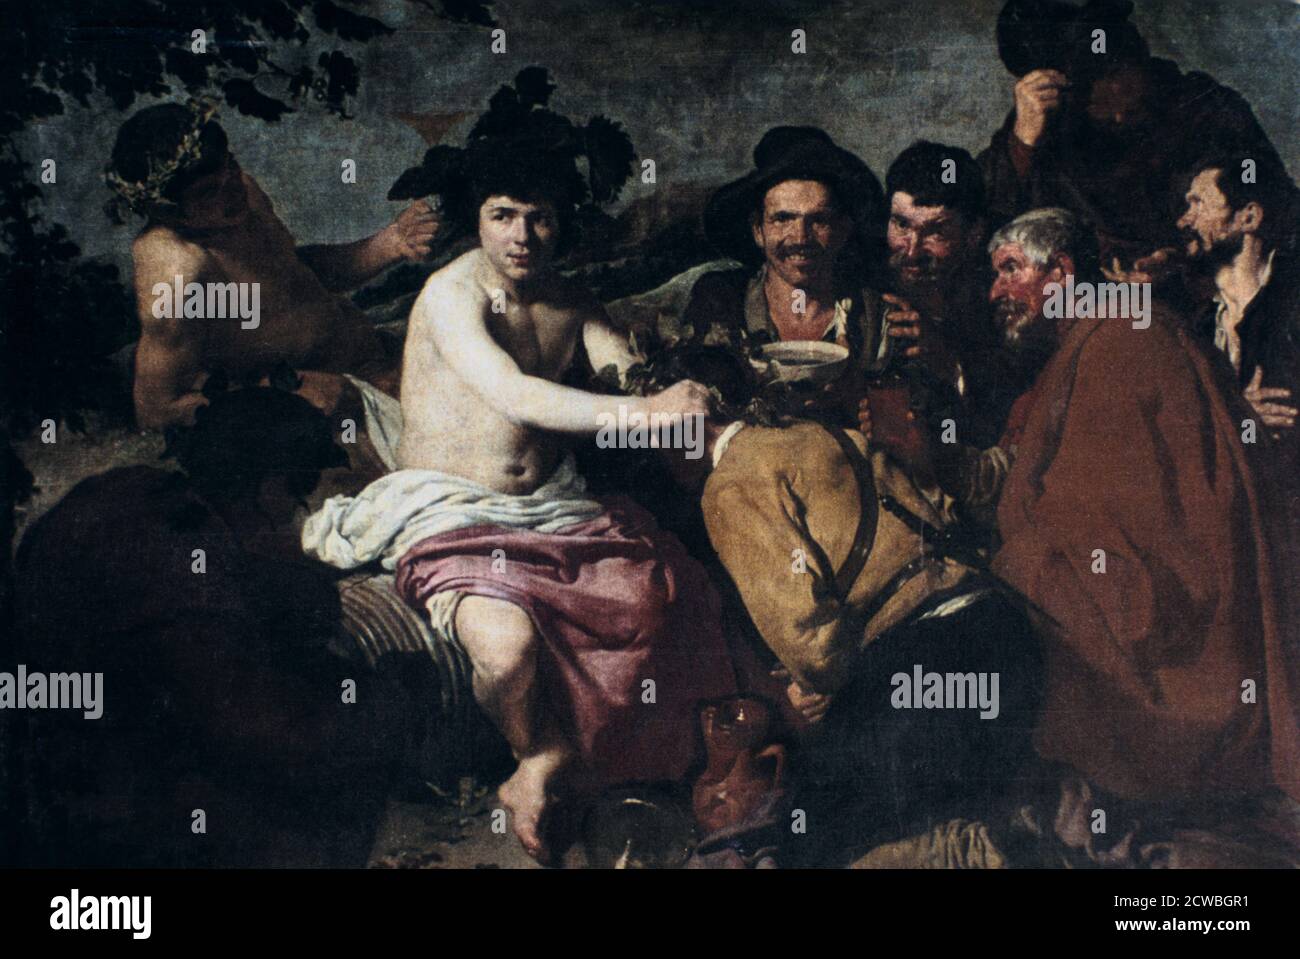 Der Triumph des Bacchus oder die Trunkenbolde, von Diego Velazquez, 17. Jahrhundert. Velazquez, einer der wenigen spanischen Maler, der mythologische Szenen abbildet, wurde oft beschuldigt, die Kunststücke und Geschichten der klassischen Götter mit wenig Respekt und sogar Spott zu behandeln. Tatsächlich aber, von seinem großartigen Realismus geleitet, brachte er die Götter einfach in die sterbliche Welt. Die beste und realistischste Art, den Triumph des gottes des Weines zu präsentieren - Bacchus für die Römer und Dionysius für die Griechen - war, ihn unter einer Gruppe alltäglicher Trunkenbolde zu zeigen. Aus der Sammlung des Prado Museums, Madrid, S. Stockfoto